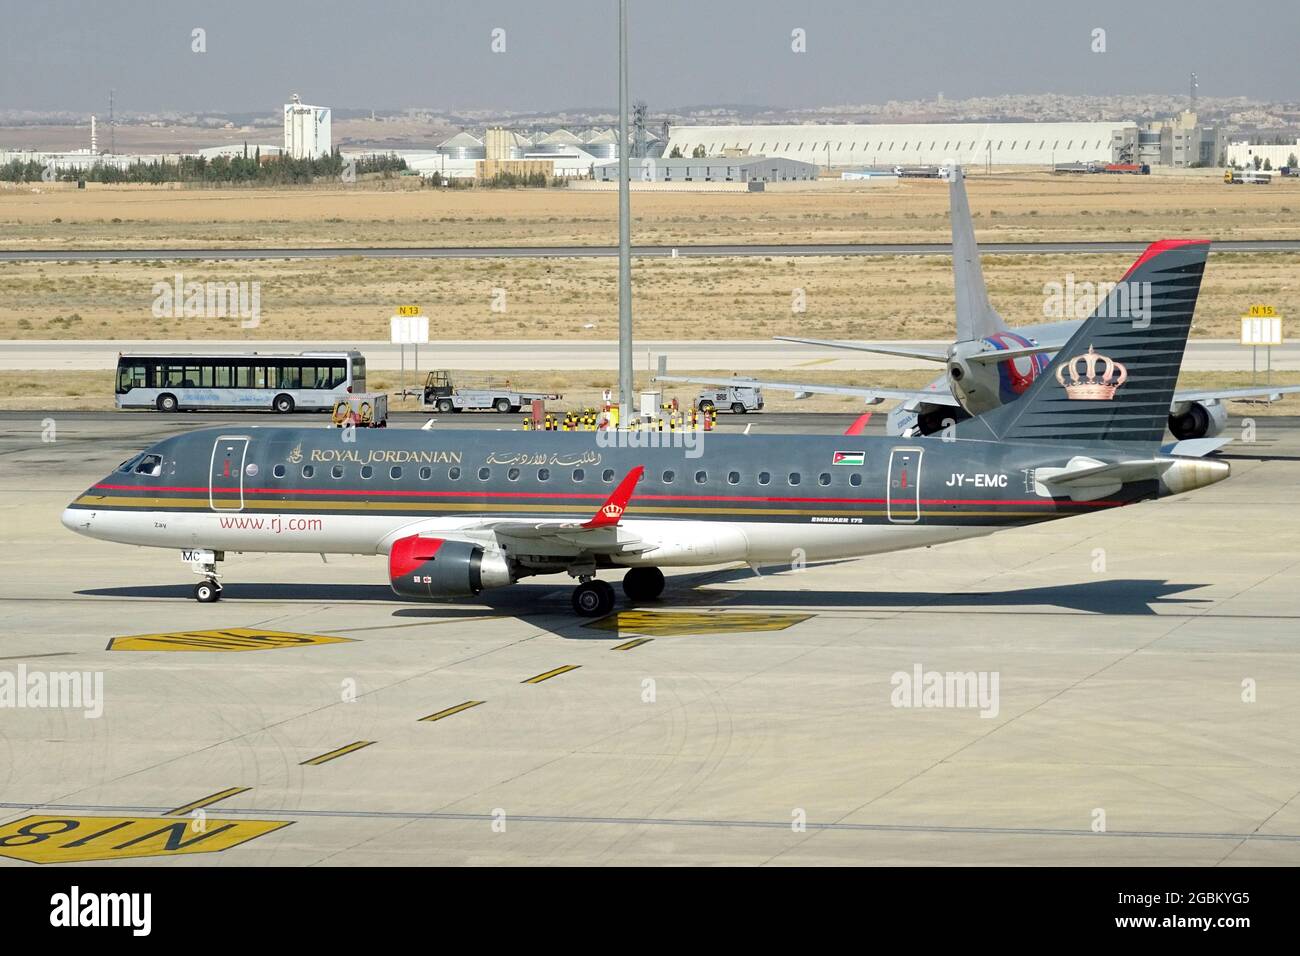 Royal Jordanian Airlines (ist die Fluggesellschaft unter der Flagge  Jordaniens), Flugzeug Embraer 175 Stockfotografie - Alamy